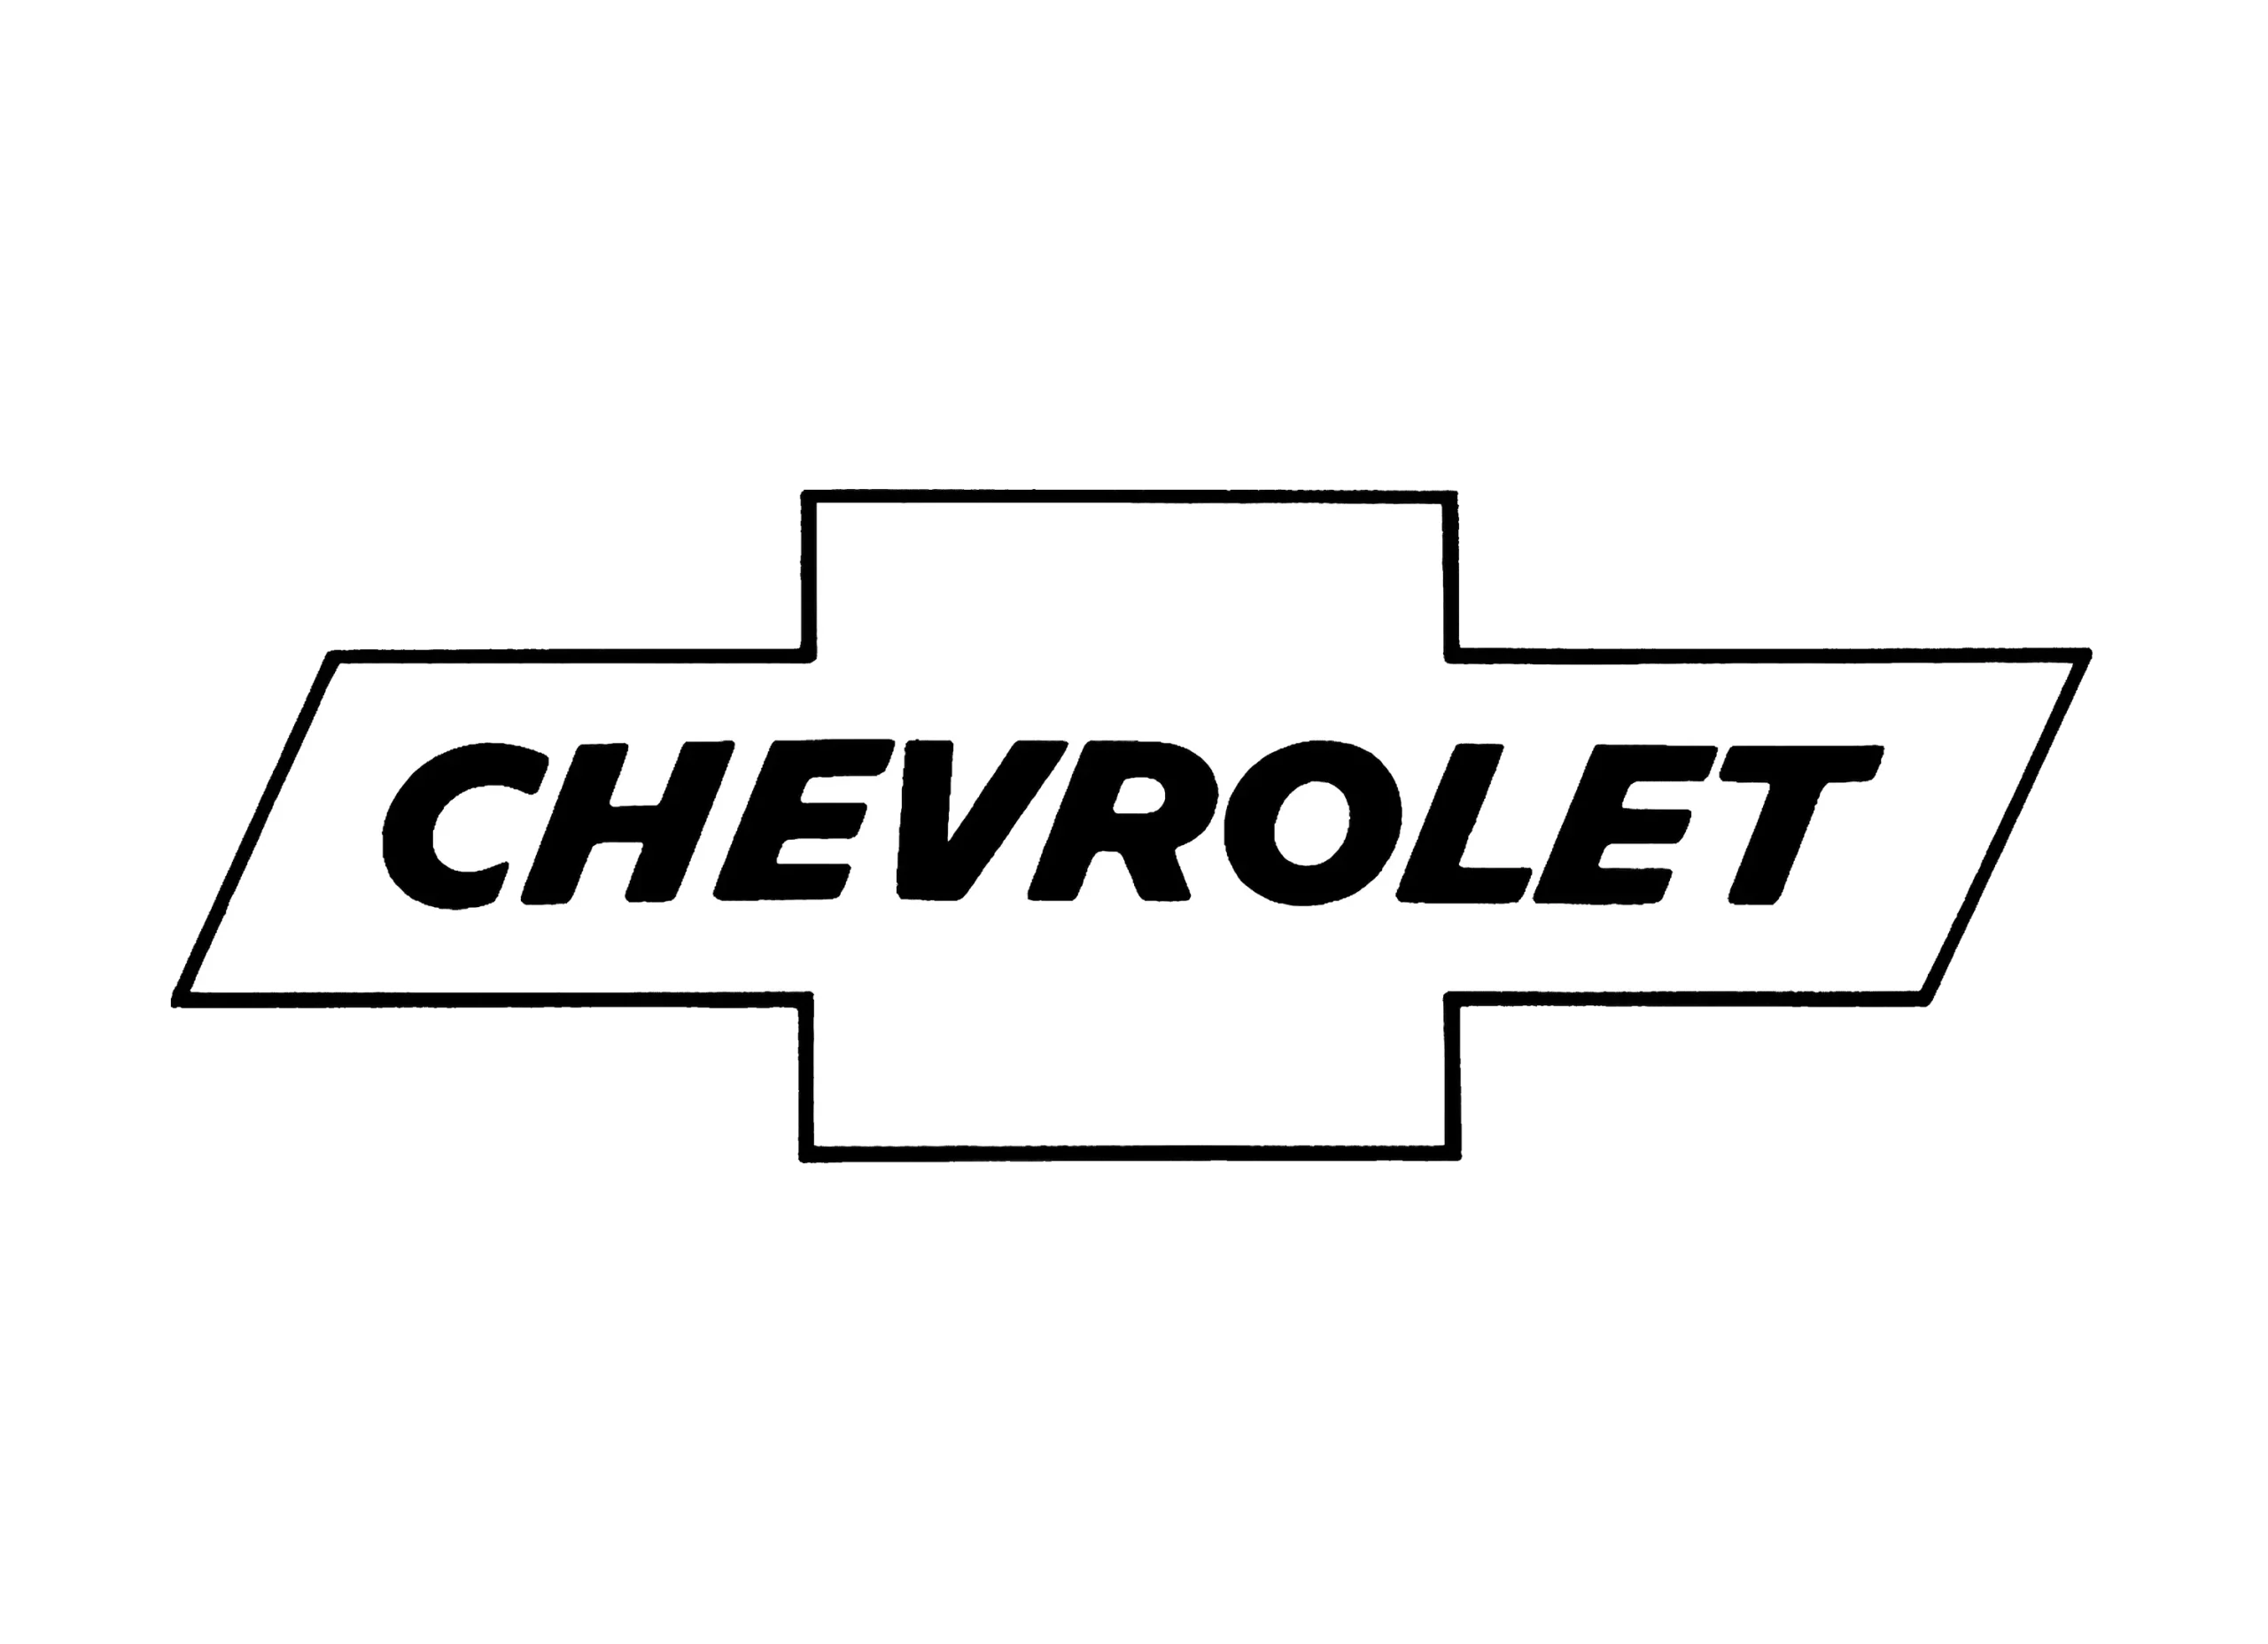 Chevrolet logo 1964-1976